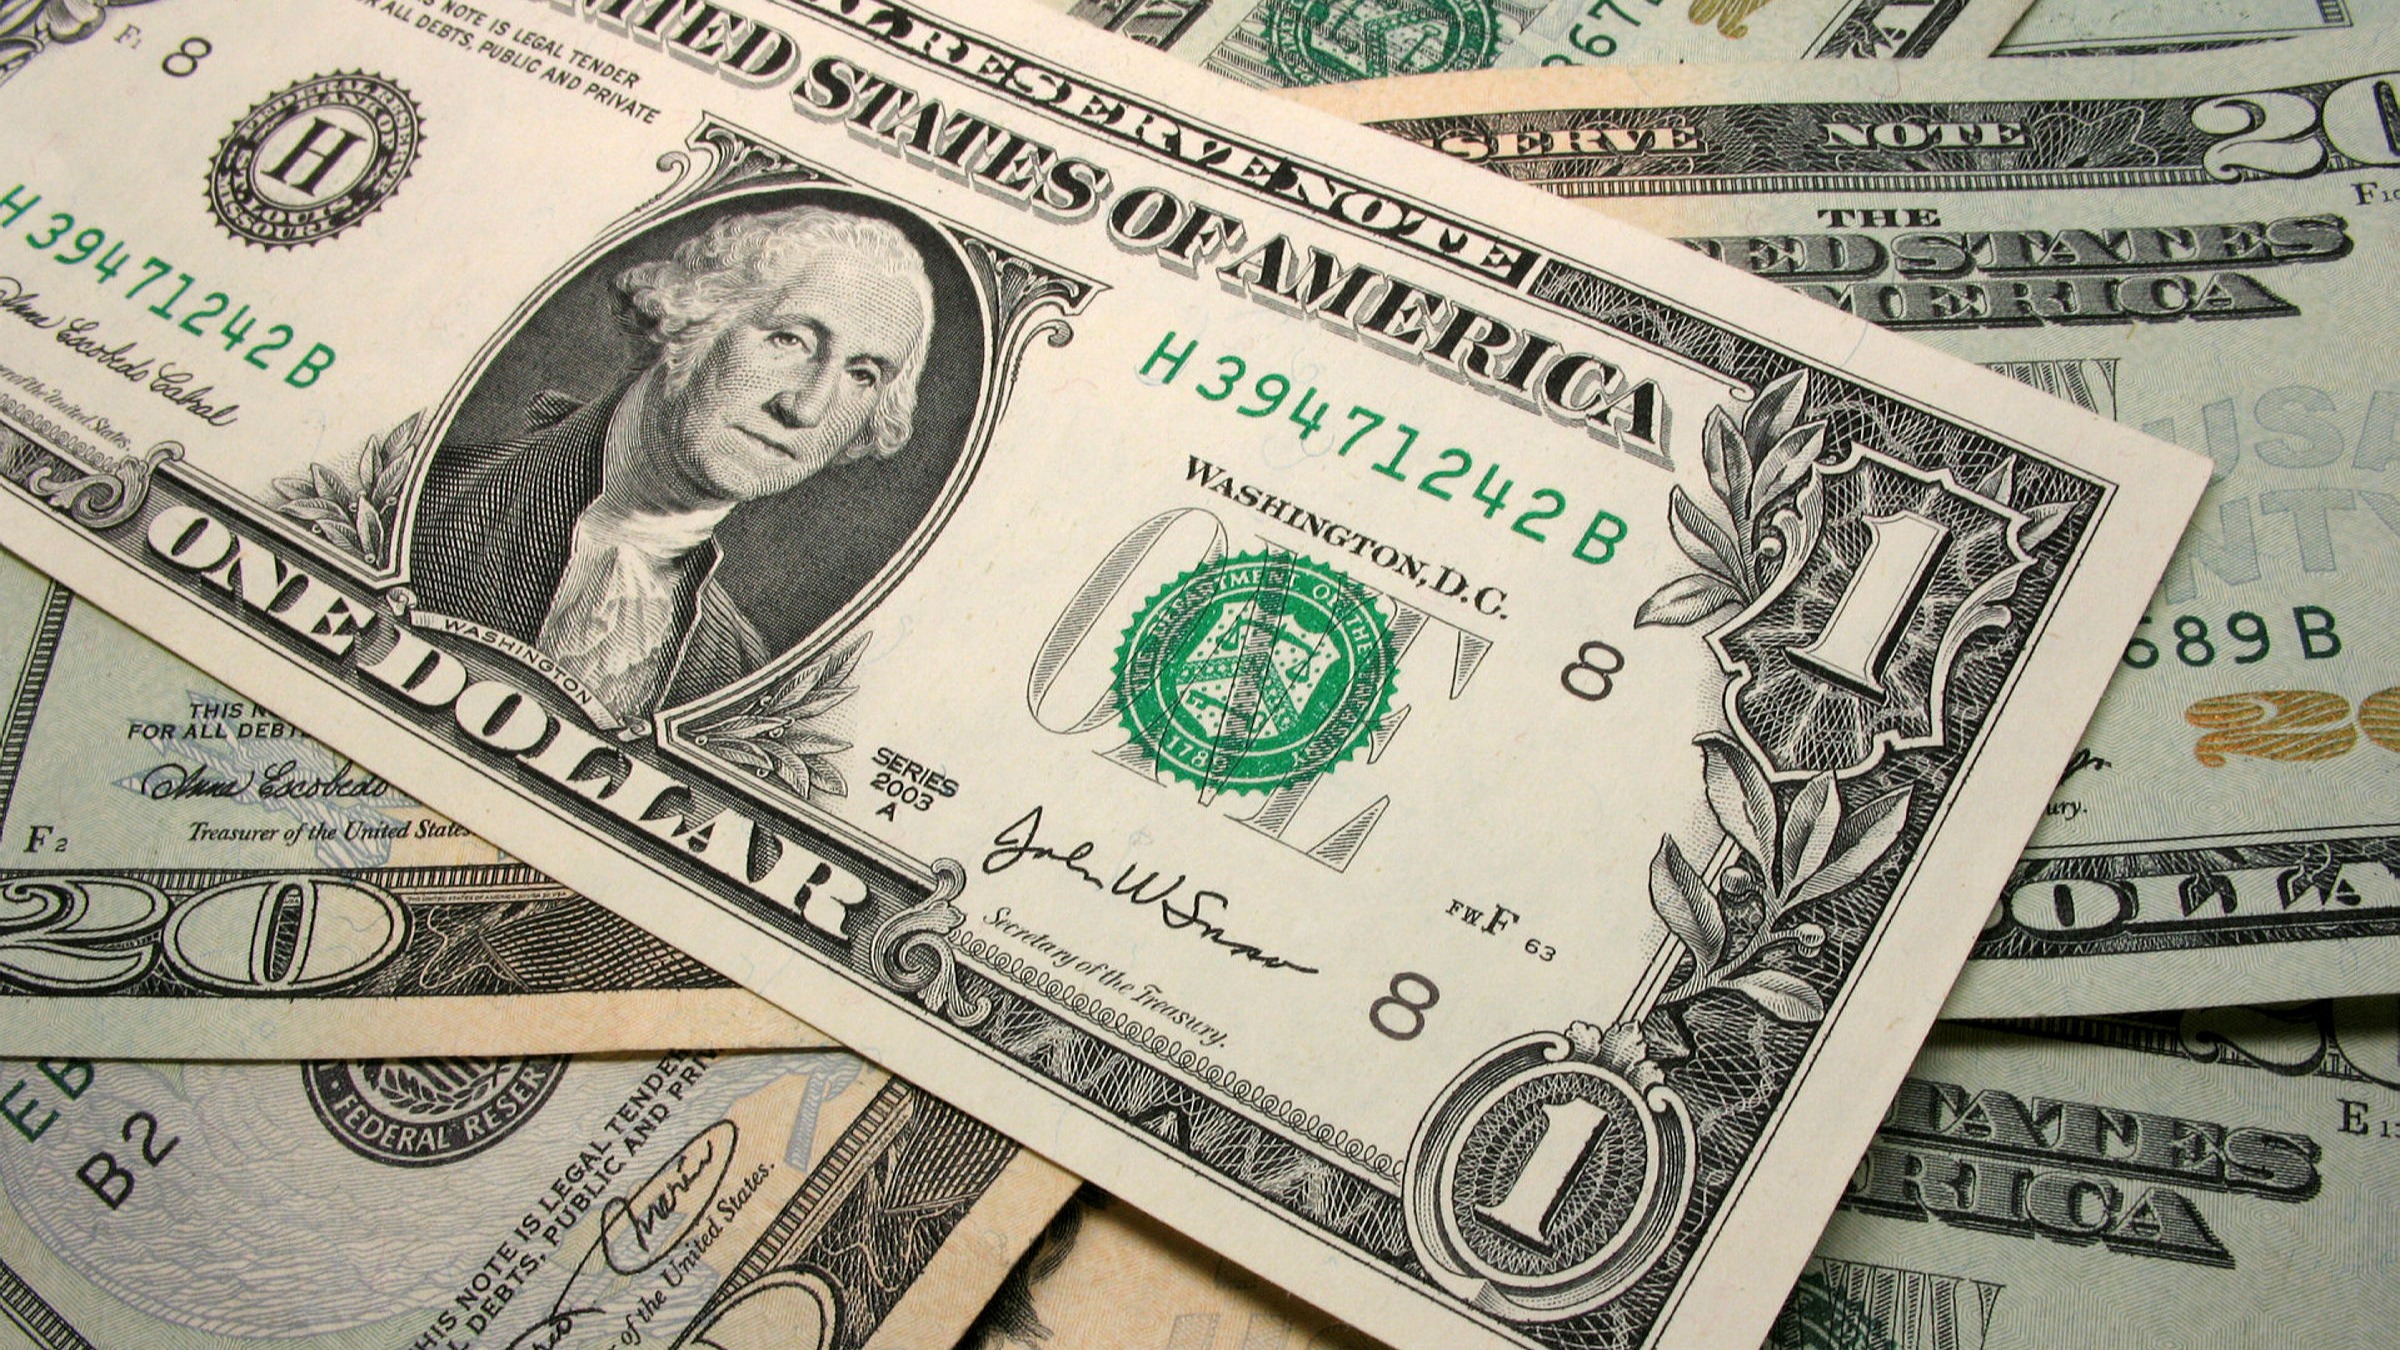 179 долларов. Доллар США. Американские деньги. Современные бумажные деньги США. Изображение американского доллара.